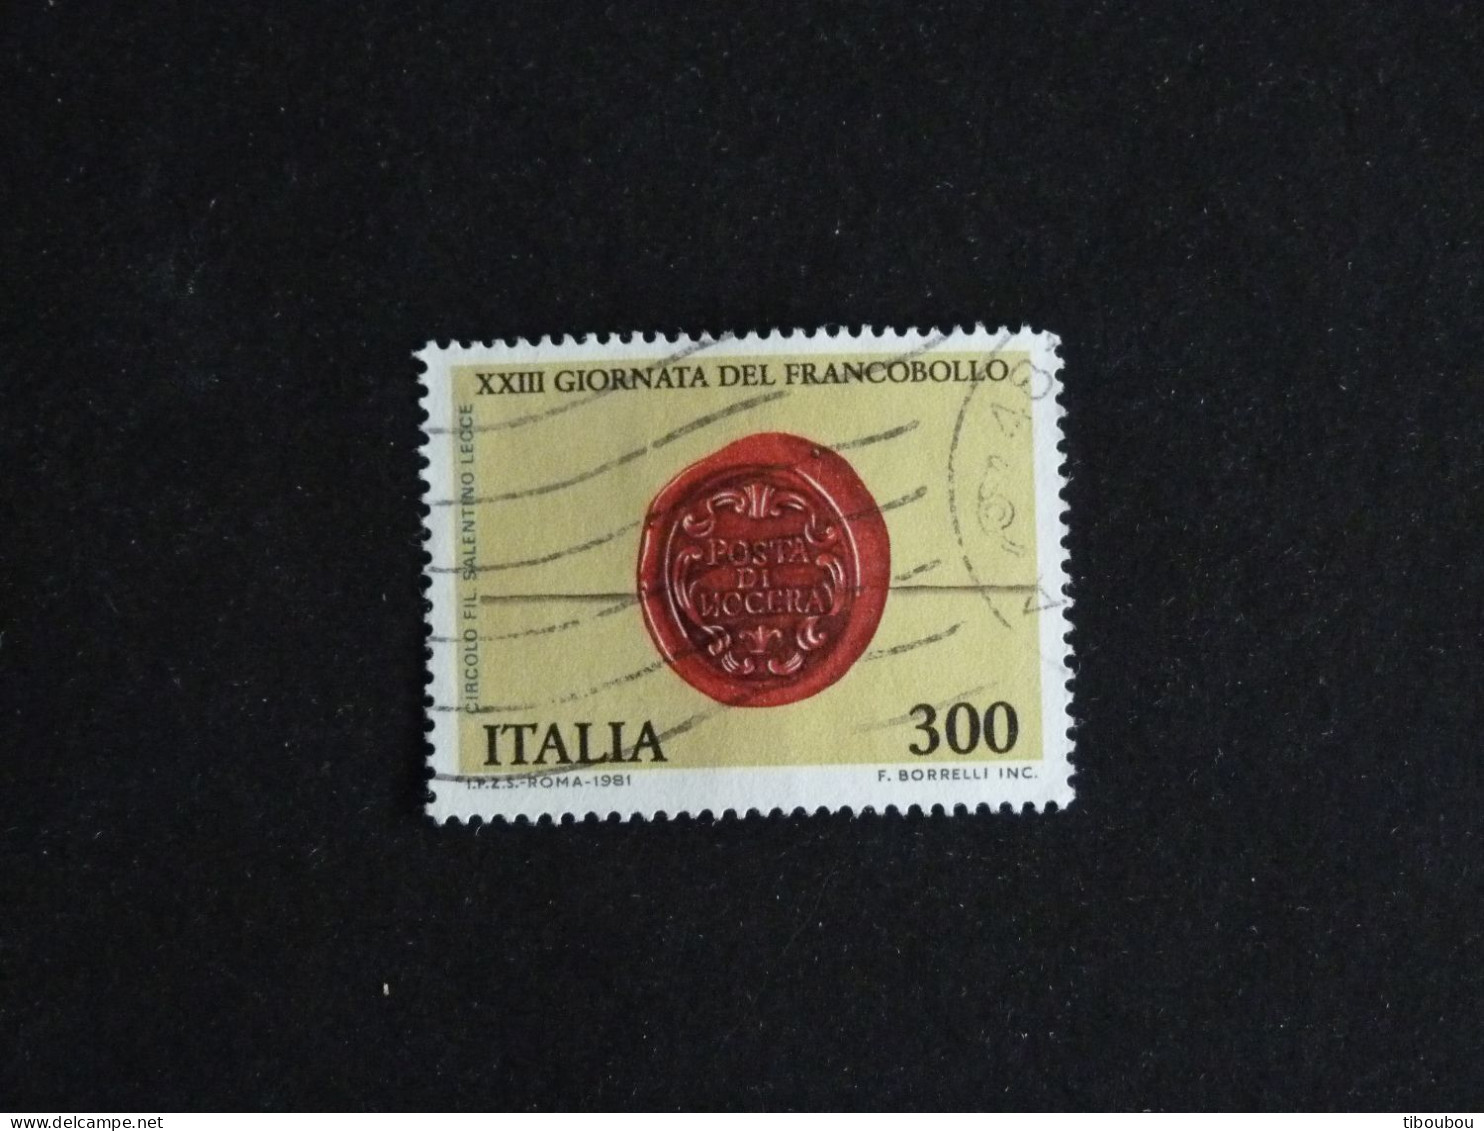 ITALIE ITALIA YT 1518 OBLITERE - JOURNEE DU TIMBRE / CERCLE PHILATELIQUE SALENTIN DE LECCE - 1981-90: Usati